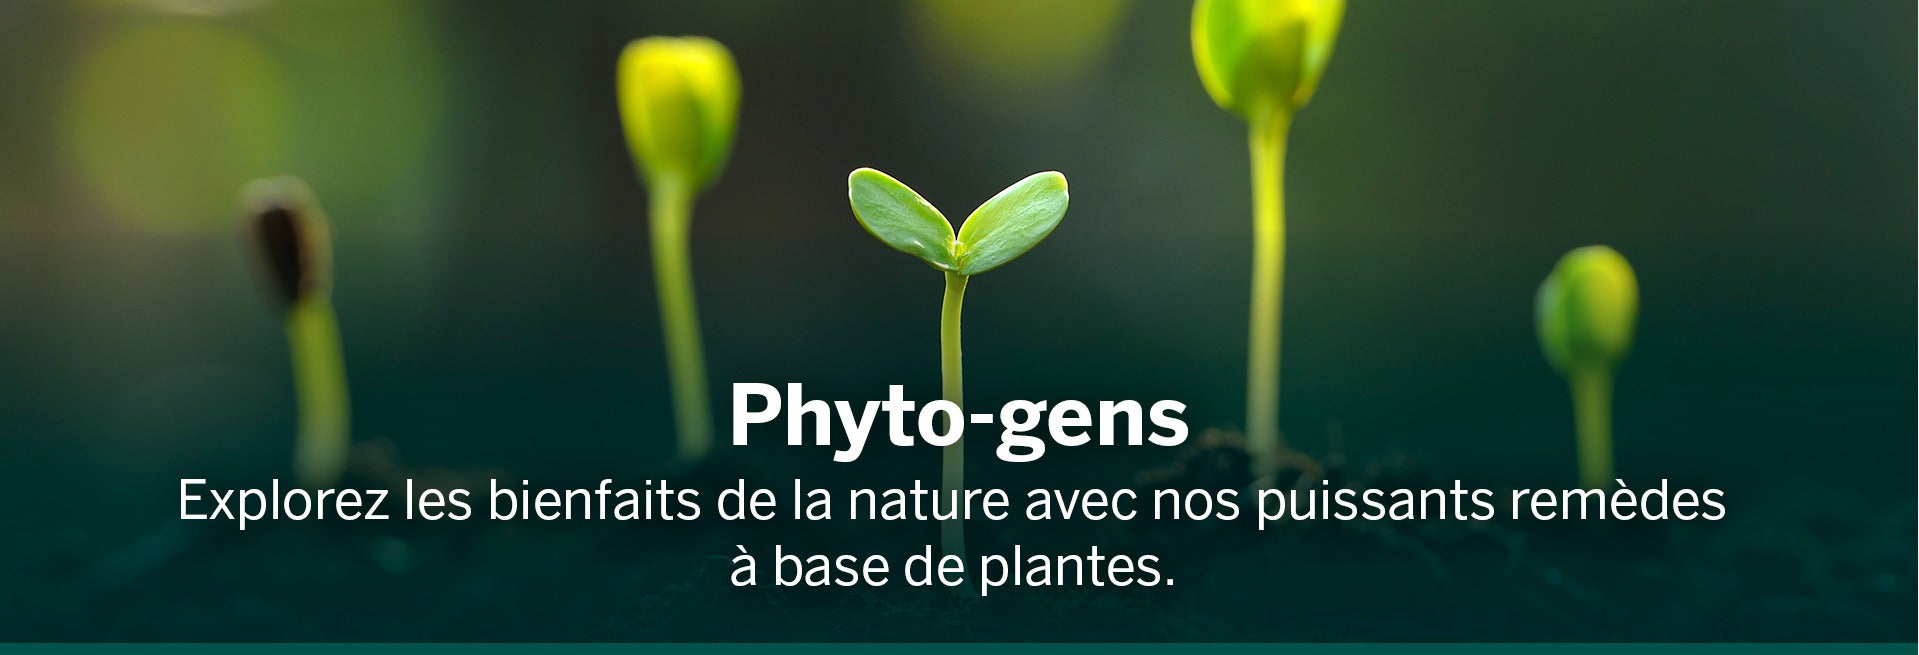 Phyto-gens, explorez les bienfaits de la nature avec les puissants remèdes végétaux Genestra avec une image de plantes en train de germer et de grandir.